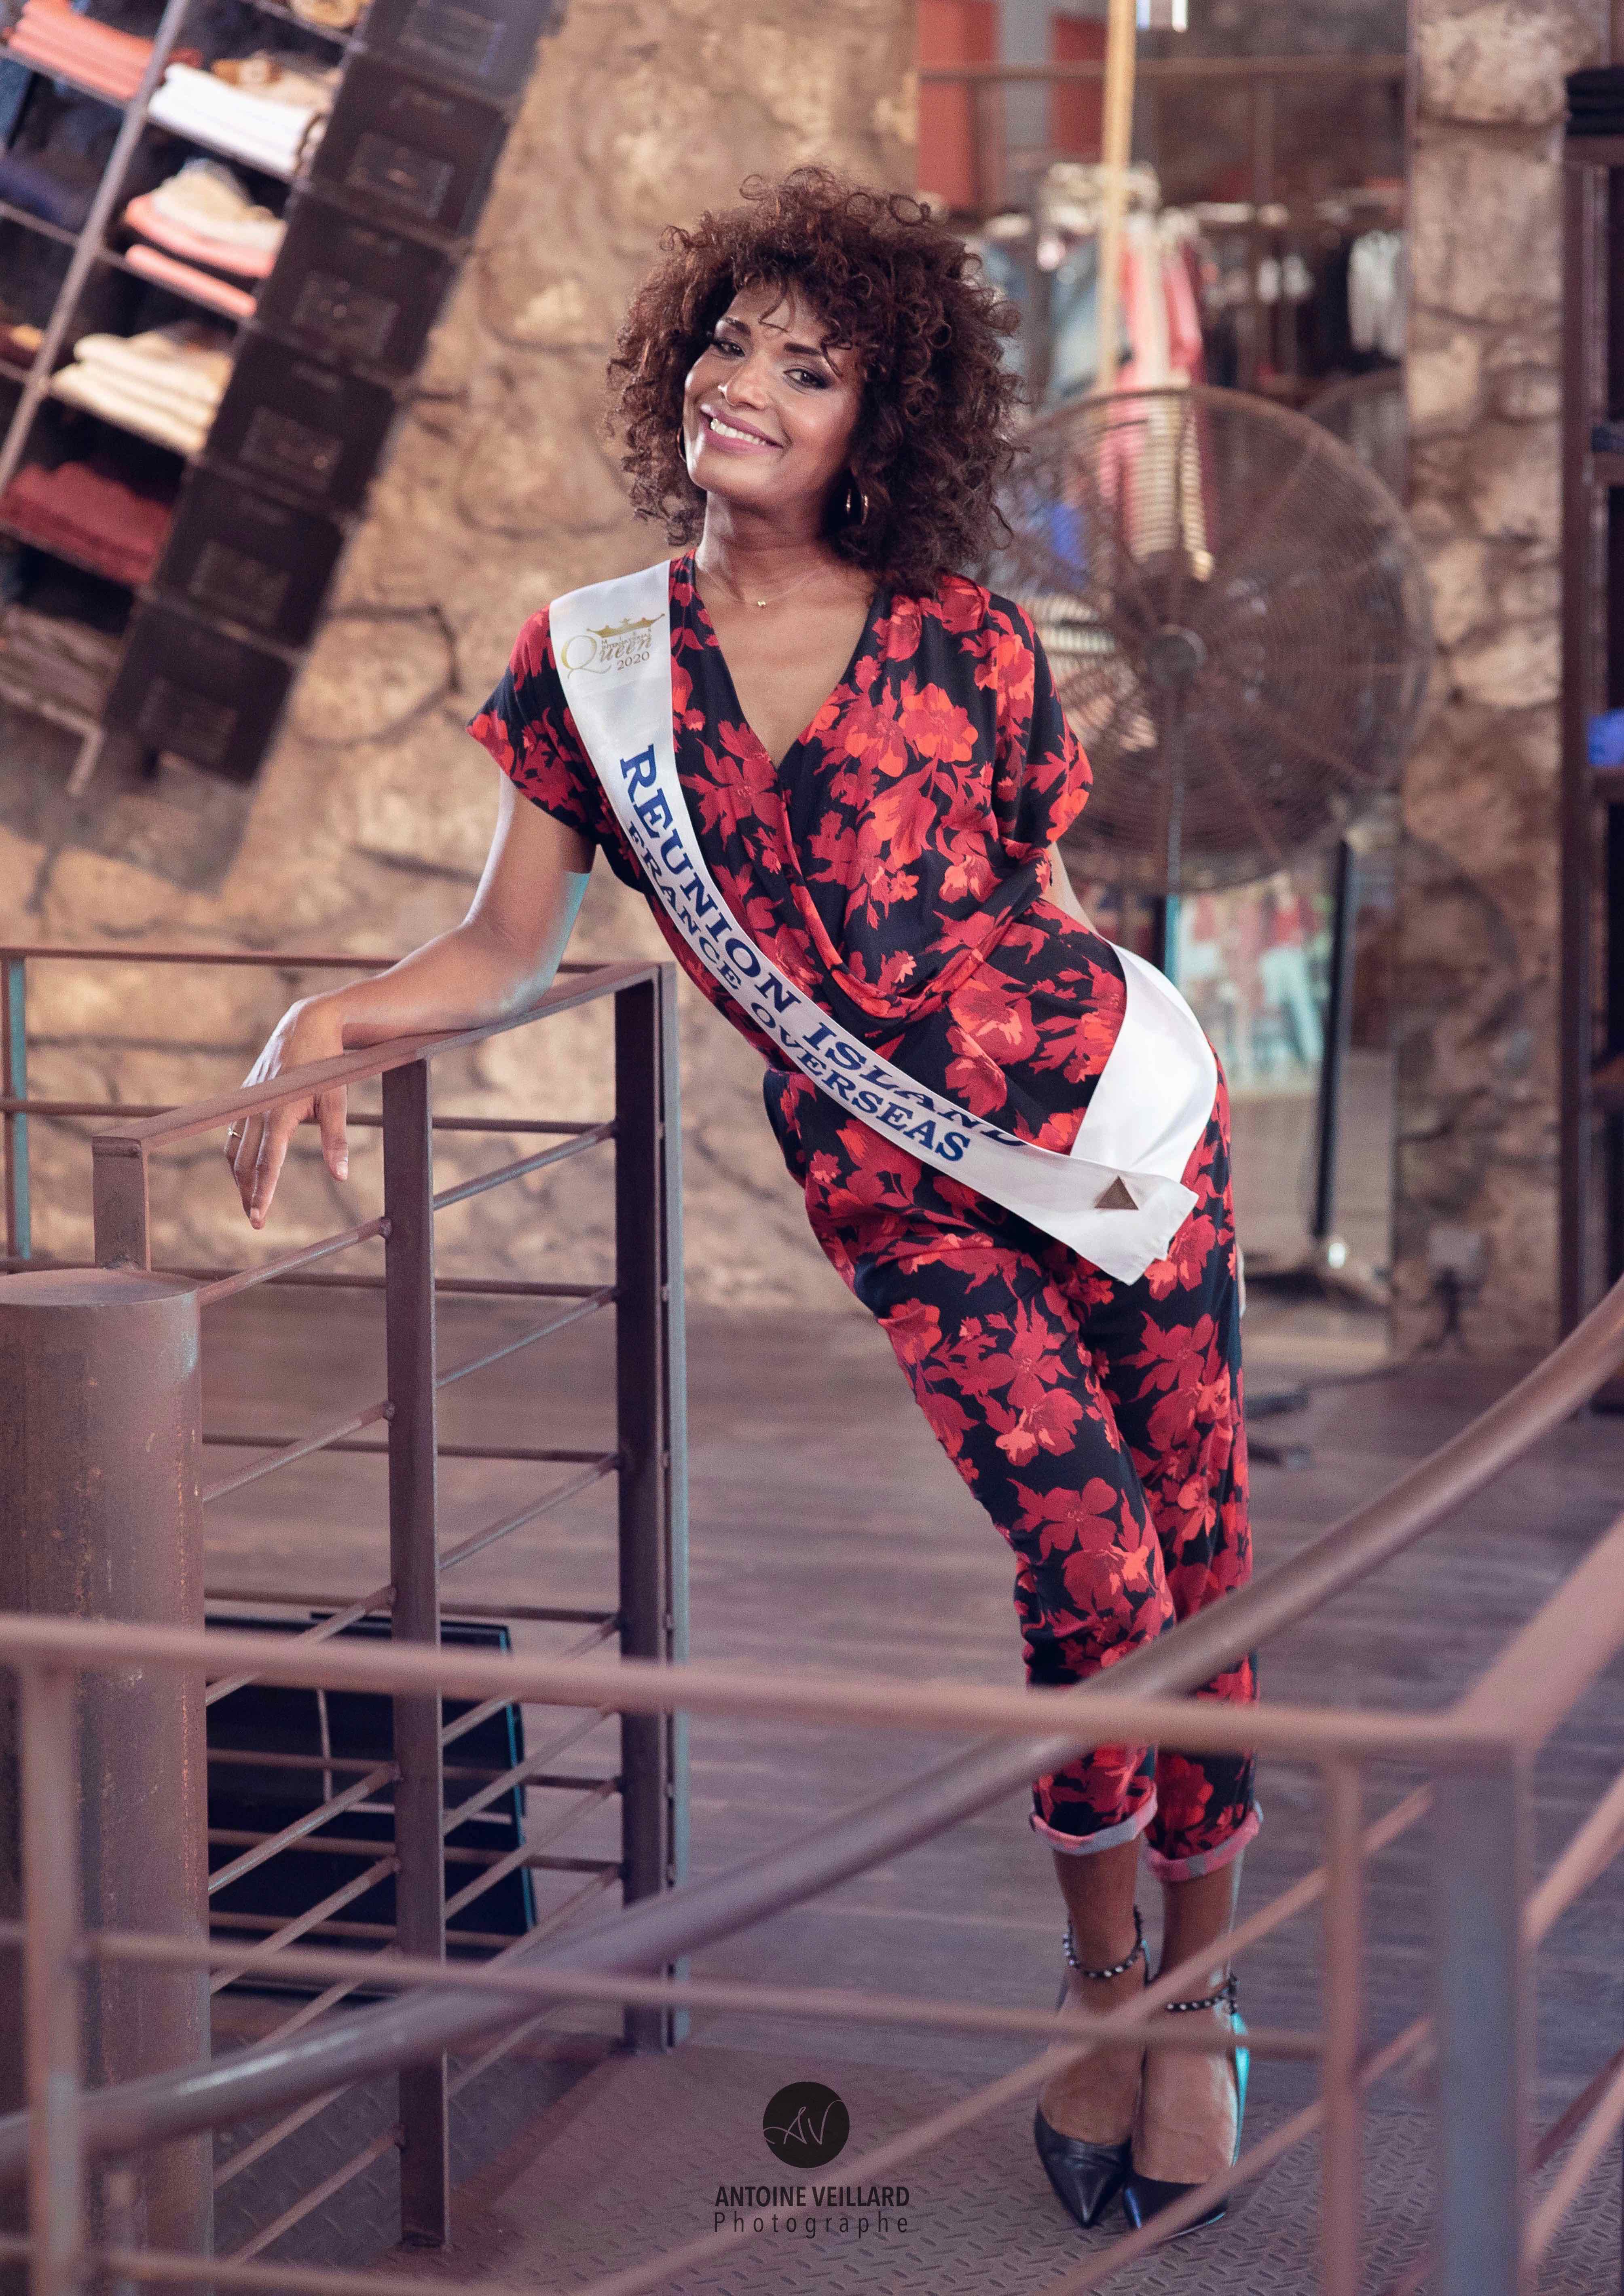 Miss International Queen : La Réunionnaise Louïz représentera la France des outre-mer  